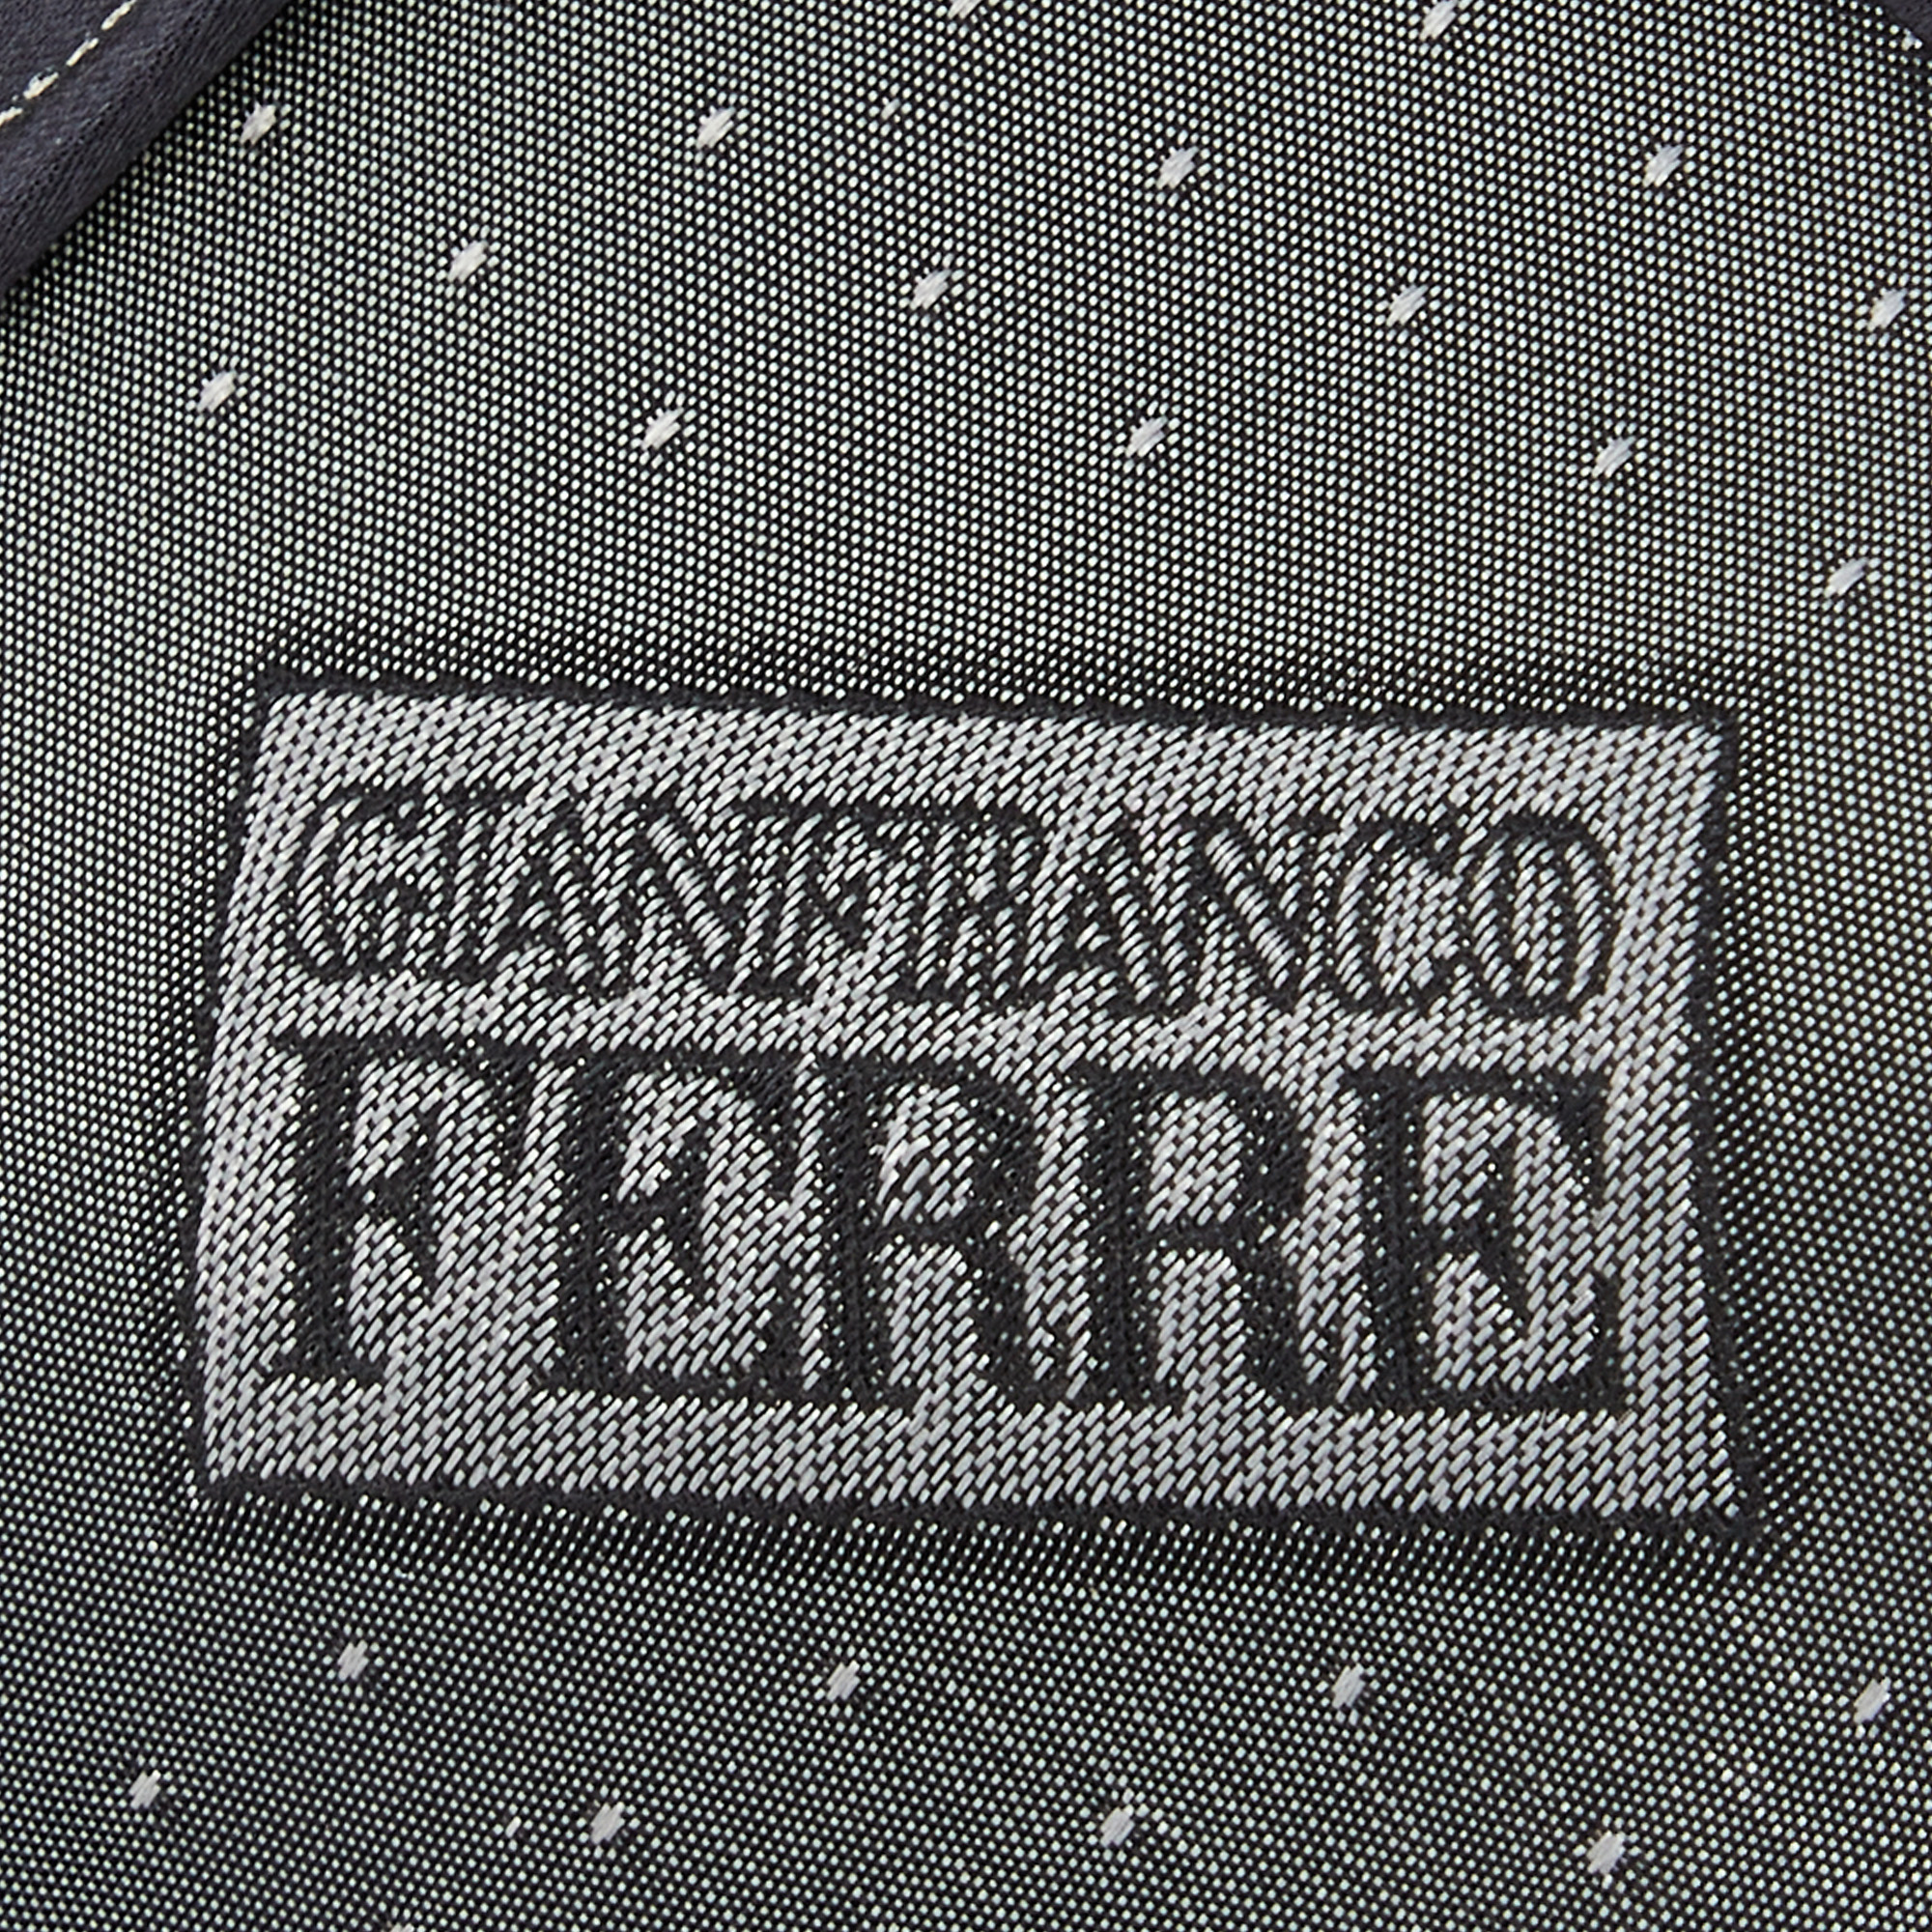 Gianfranco Ferre Black Fan Printed Silk Tie